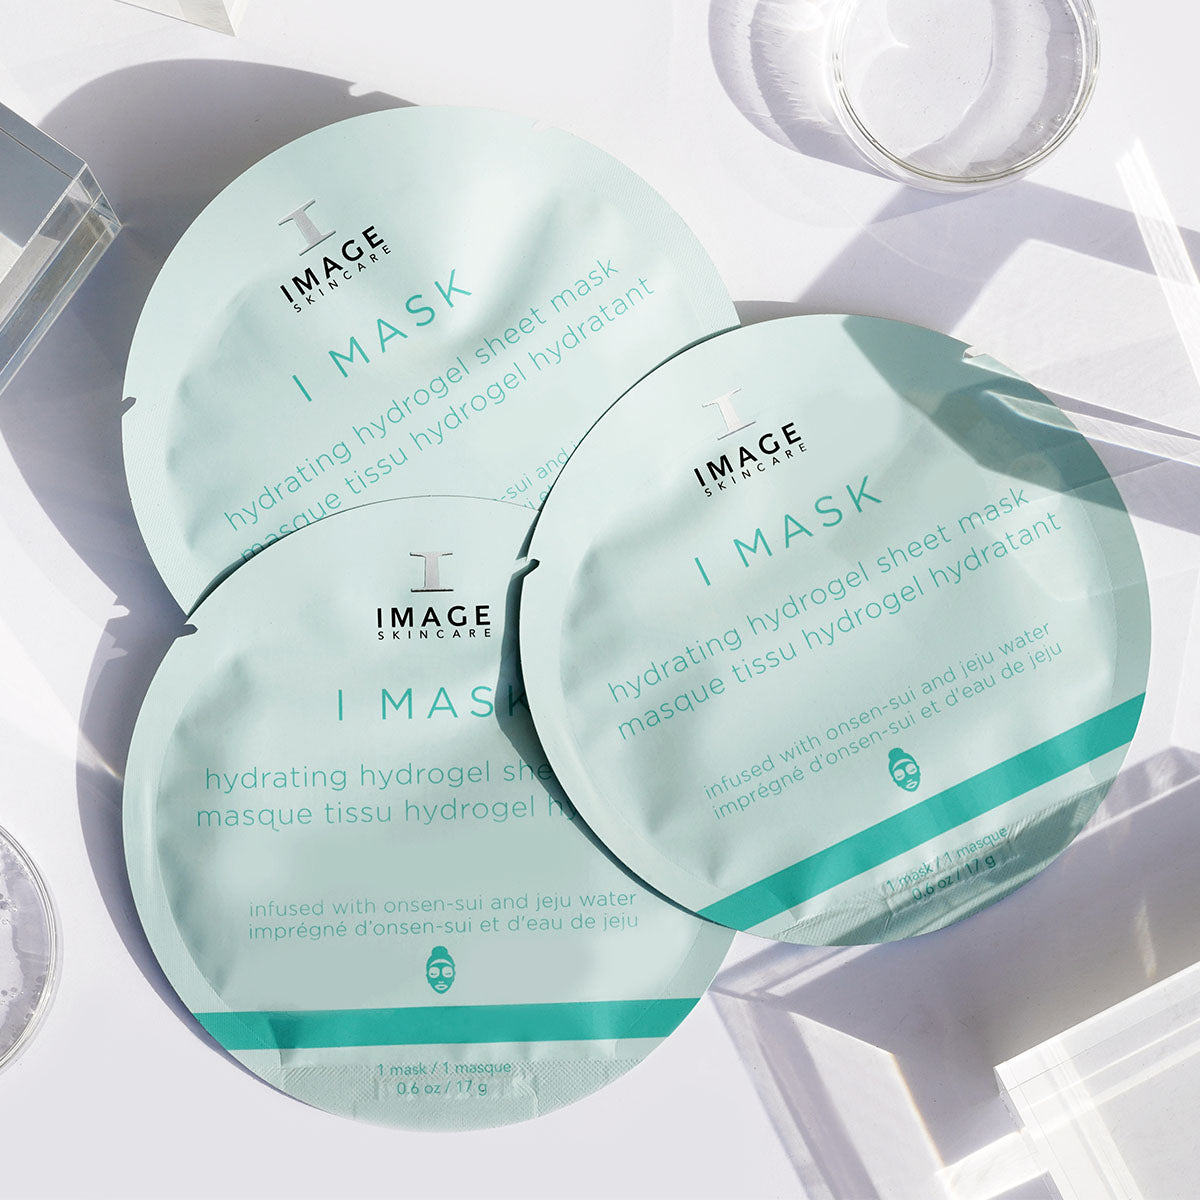 I MASK hydrating hydrogel sheet mask (5 pack) | IMAGE Skincare